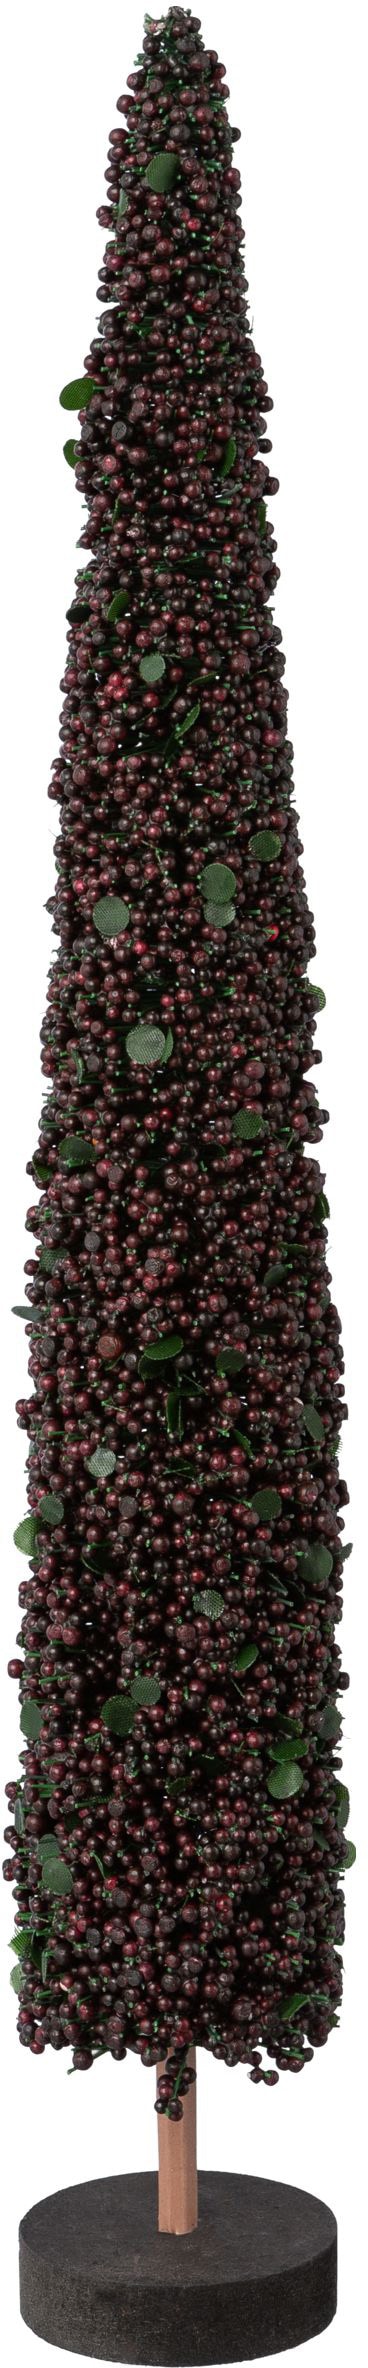 Creativ deco Dekobaum »Weihnachtsdeko«, auf hochwertiger Holzbase, mit Perlen verziert, Höhe 38 cm